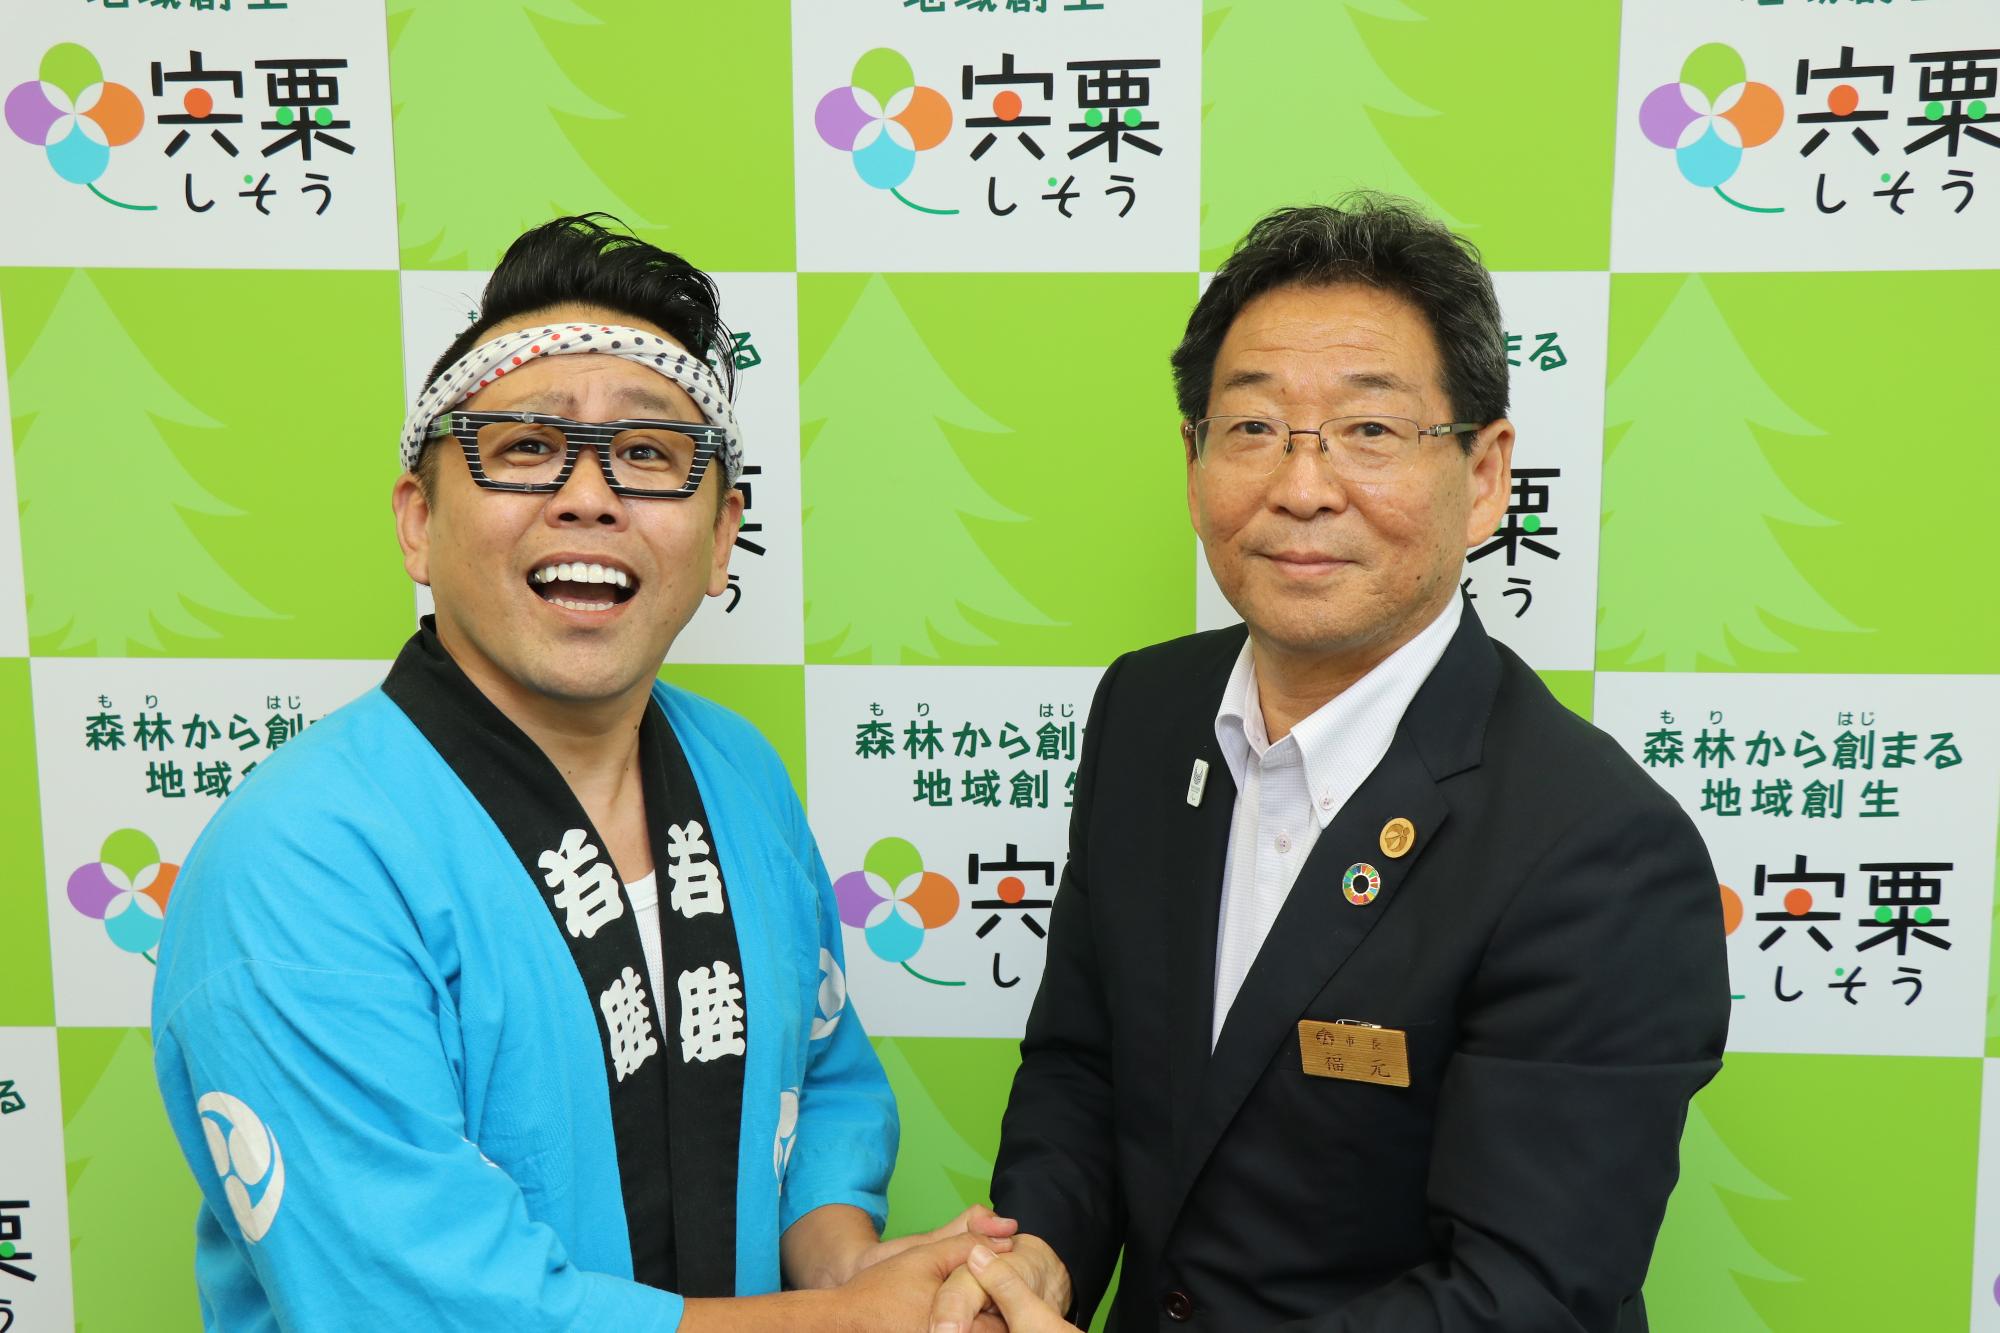 山田大地さんと田路市長が笑顔で握手している写真